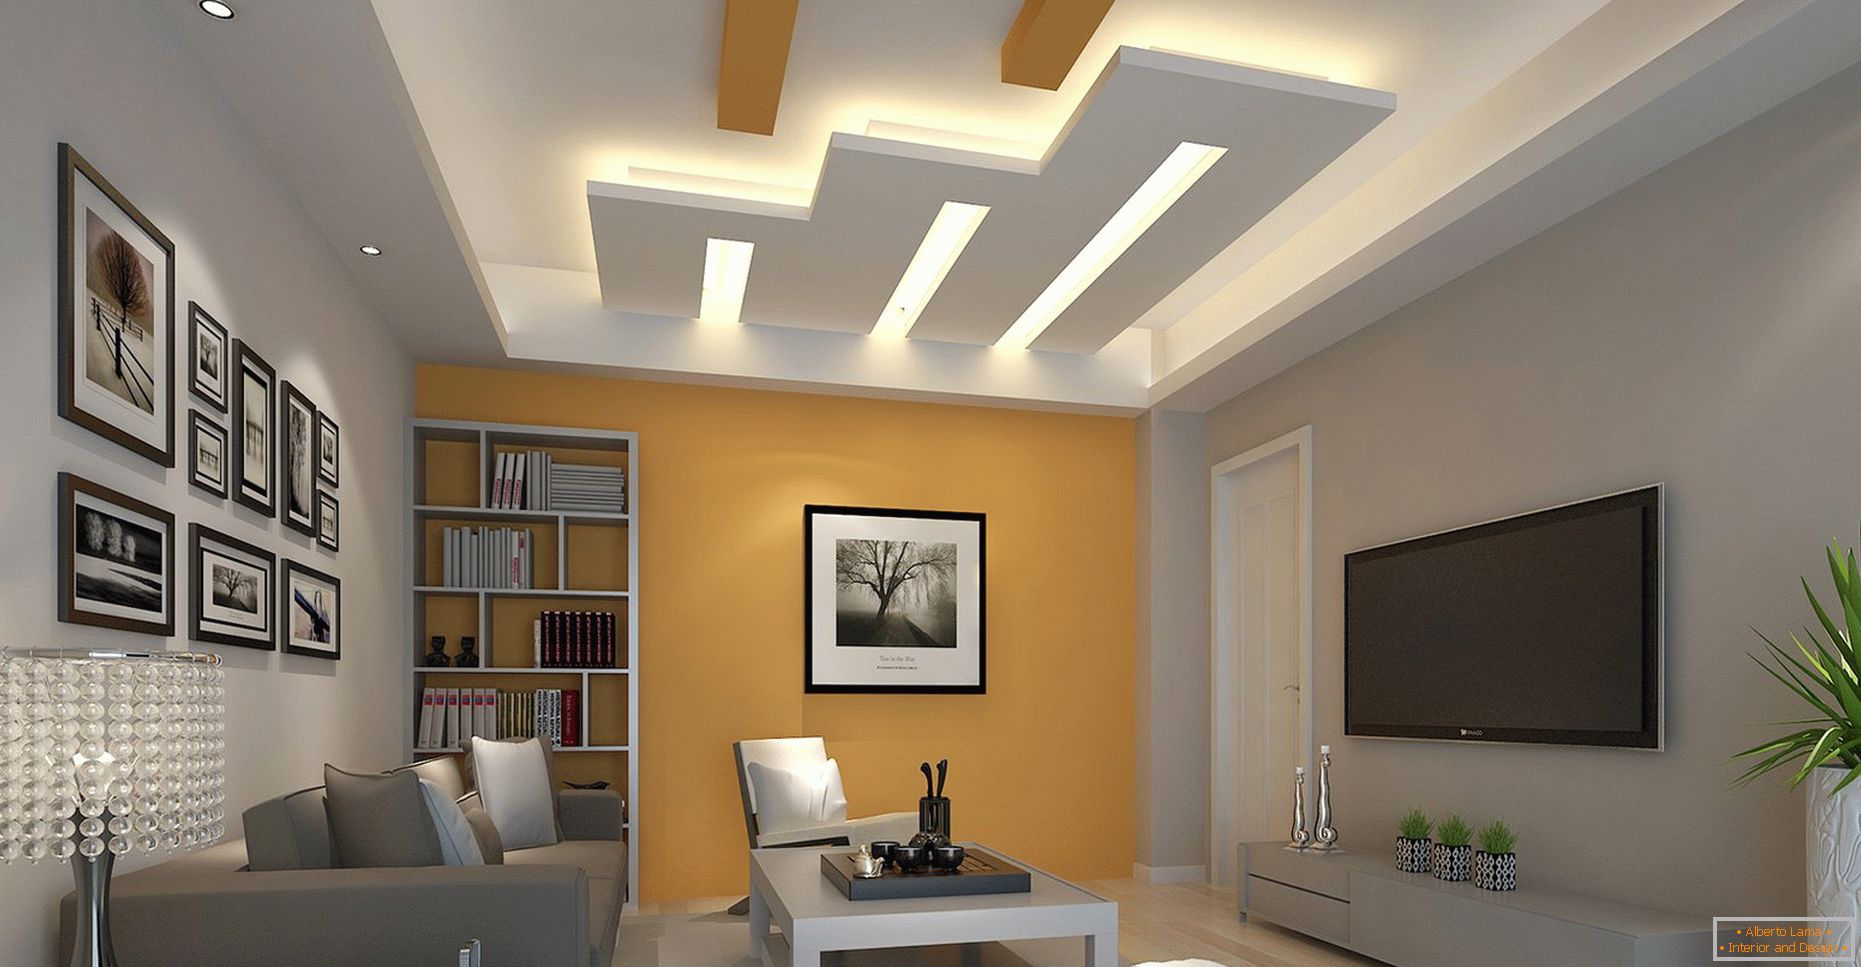 Figure geometriche nel design del soffitto con illuminazione